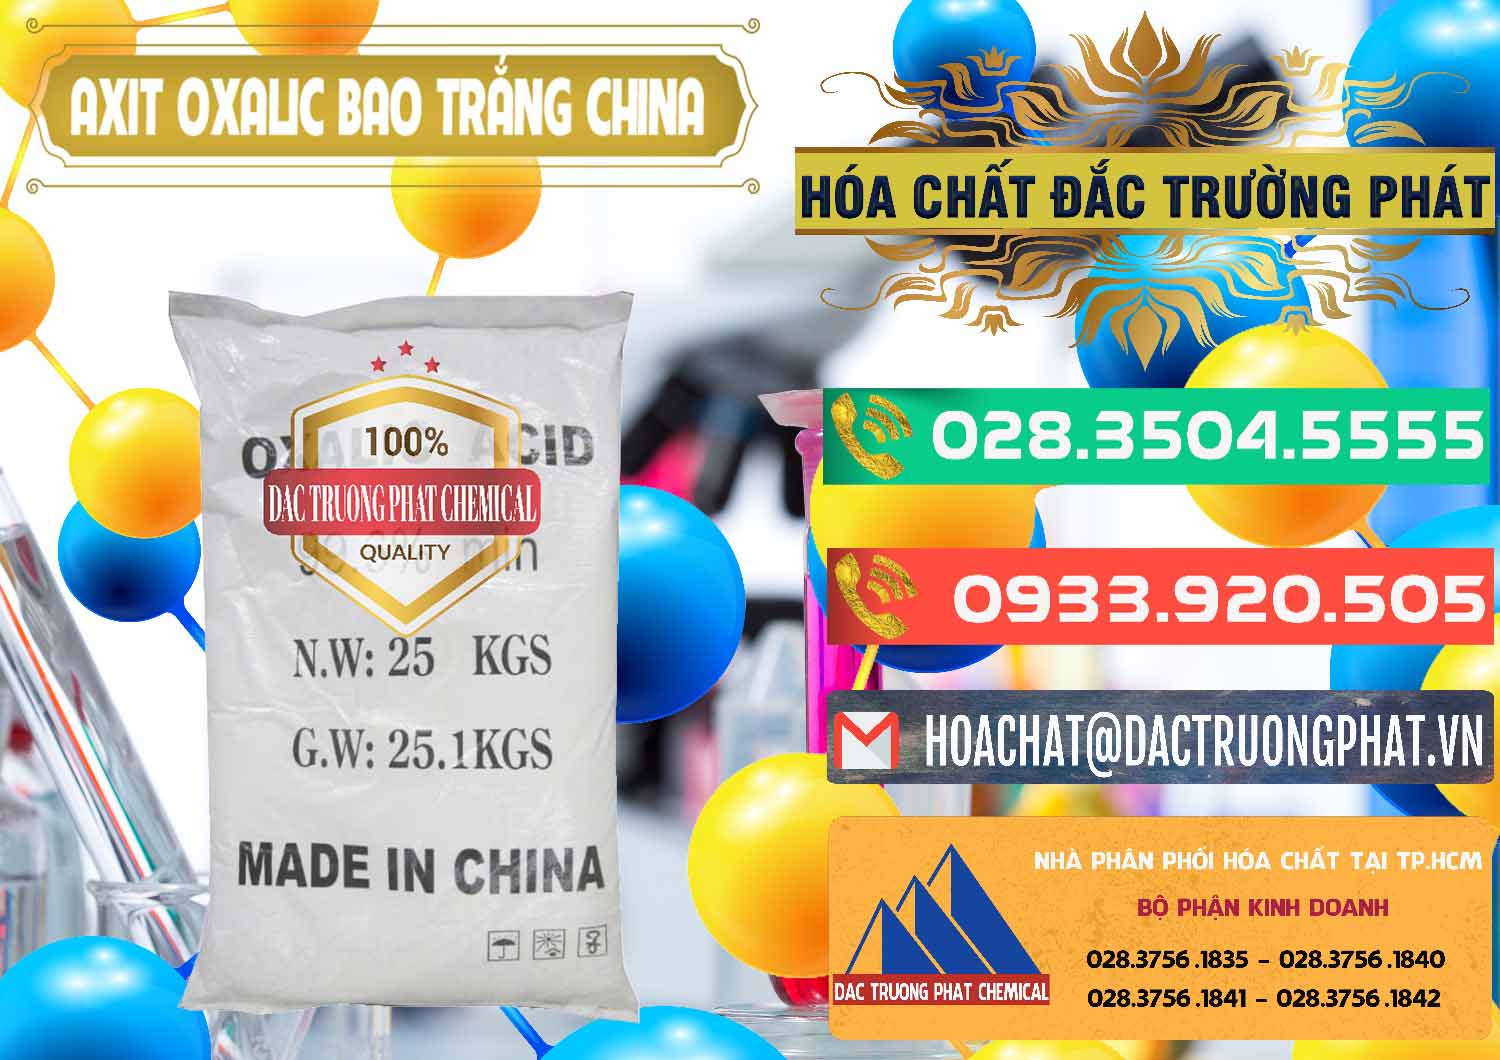 Nơi chuyên nhập khẩu - bán Acid Oxalic – Axit Oxalic 99.6% Bao Trắng Trung Quốc China - 0270 - Chuyên phân phối ( cung ứng ) hóa chất tại TP.HCM - congtyhoachat.com.vn